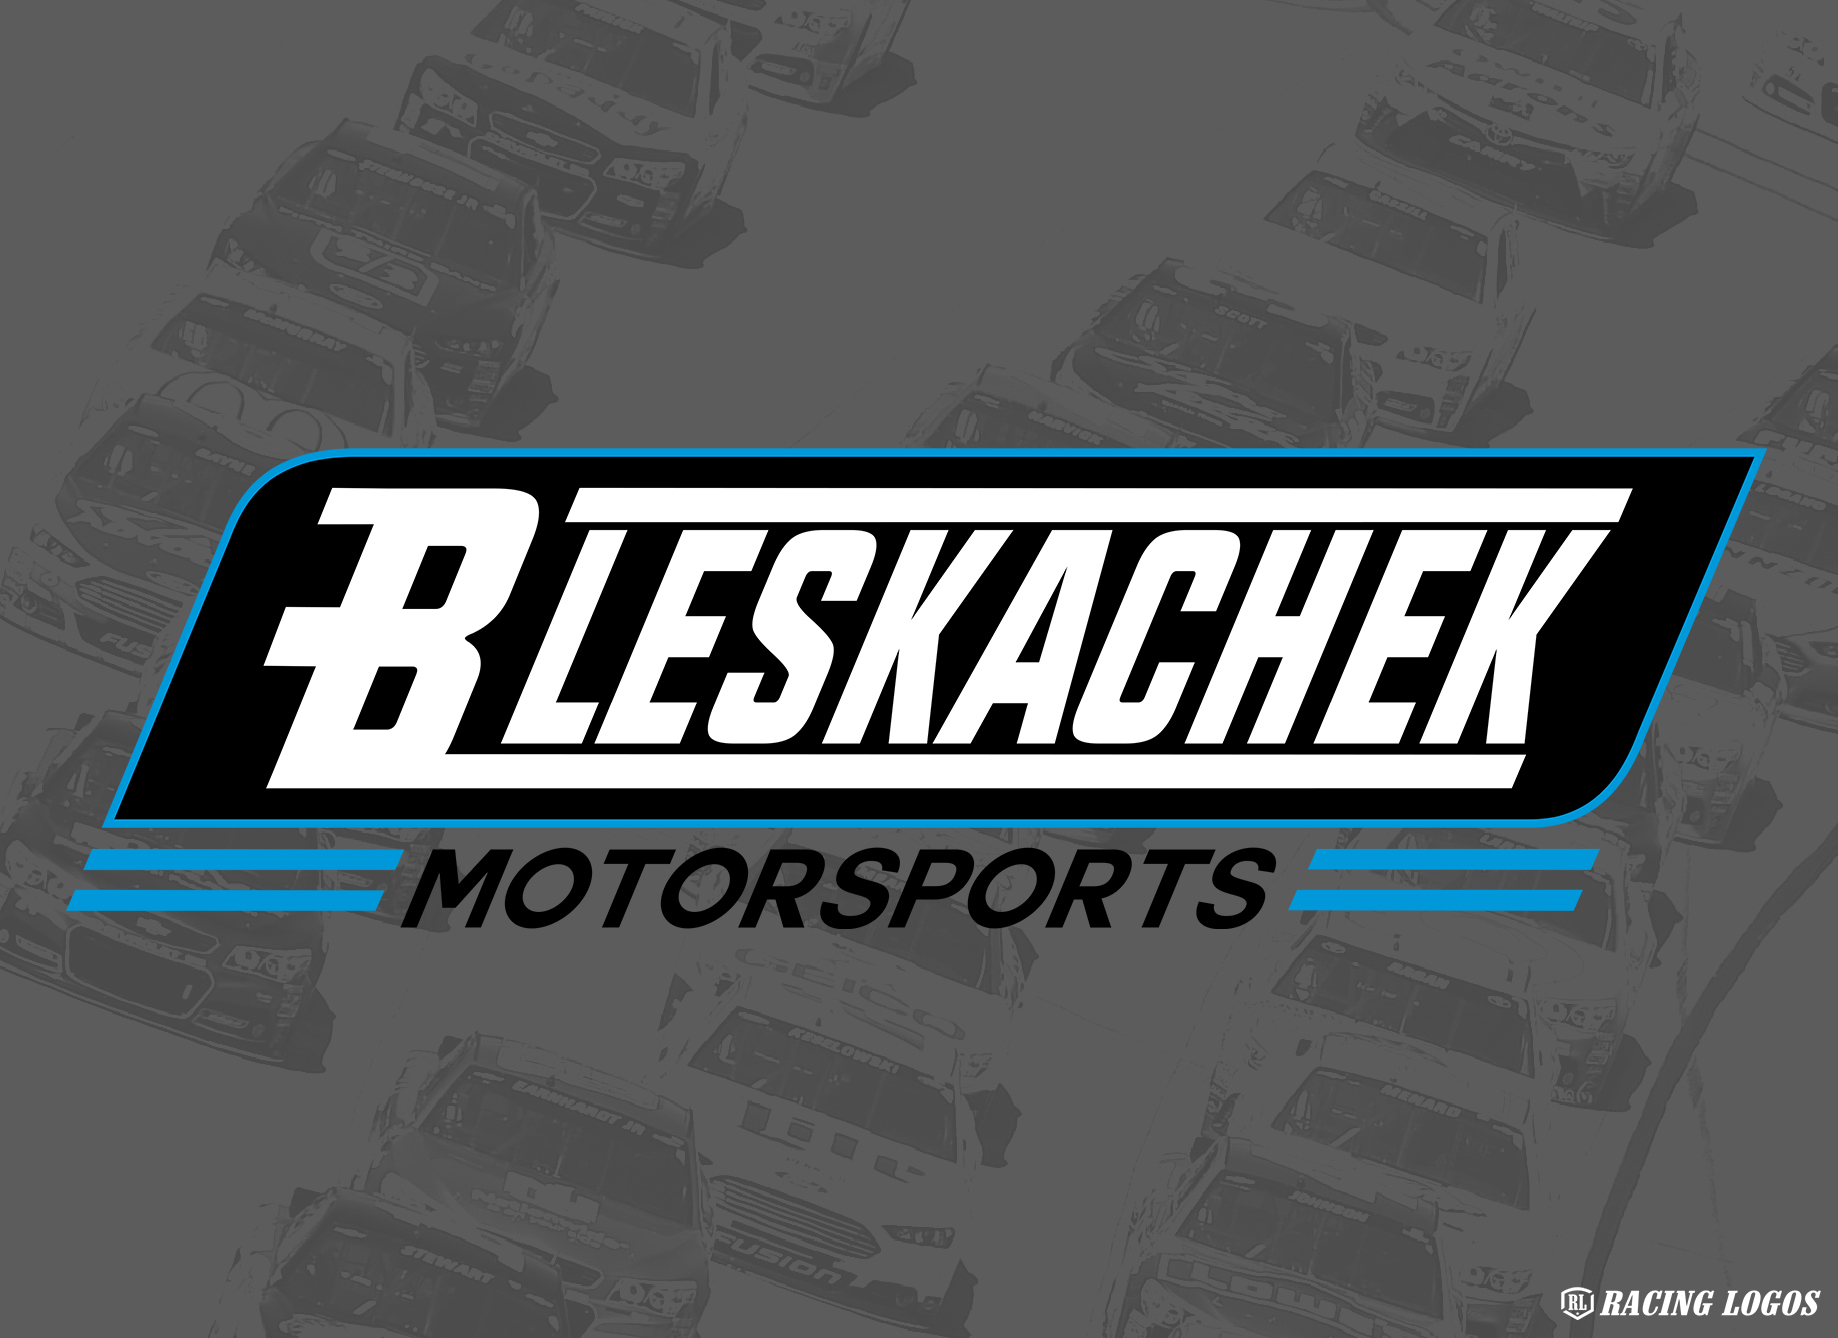 Bleskachek_Motorpsorts-Logo.jpg